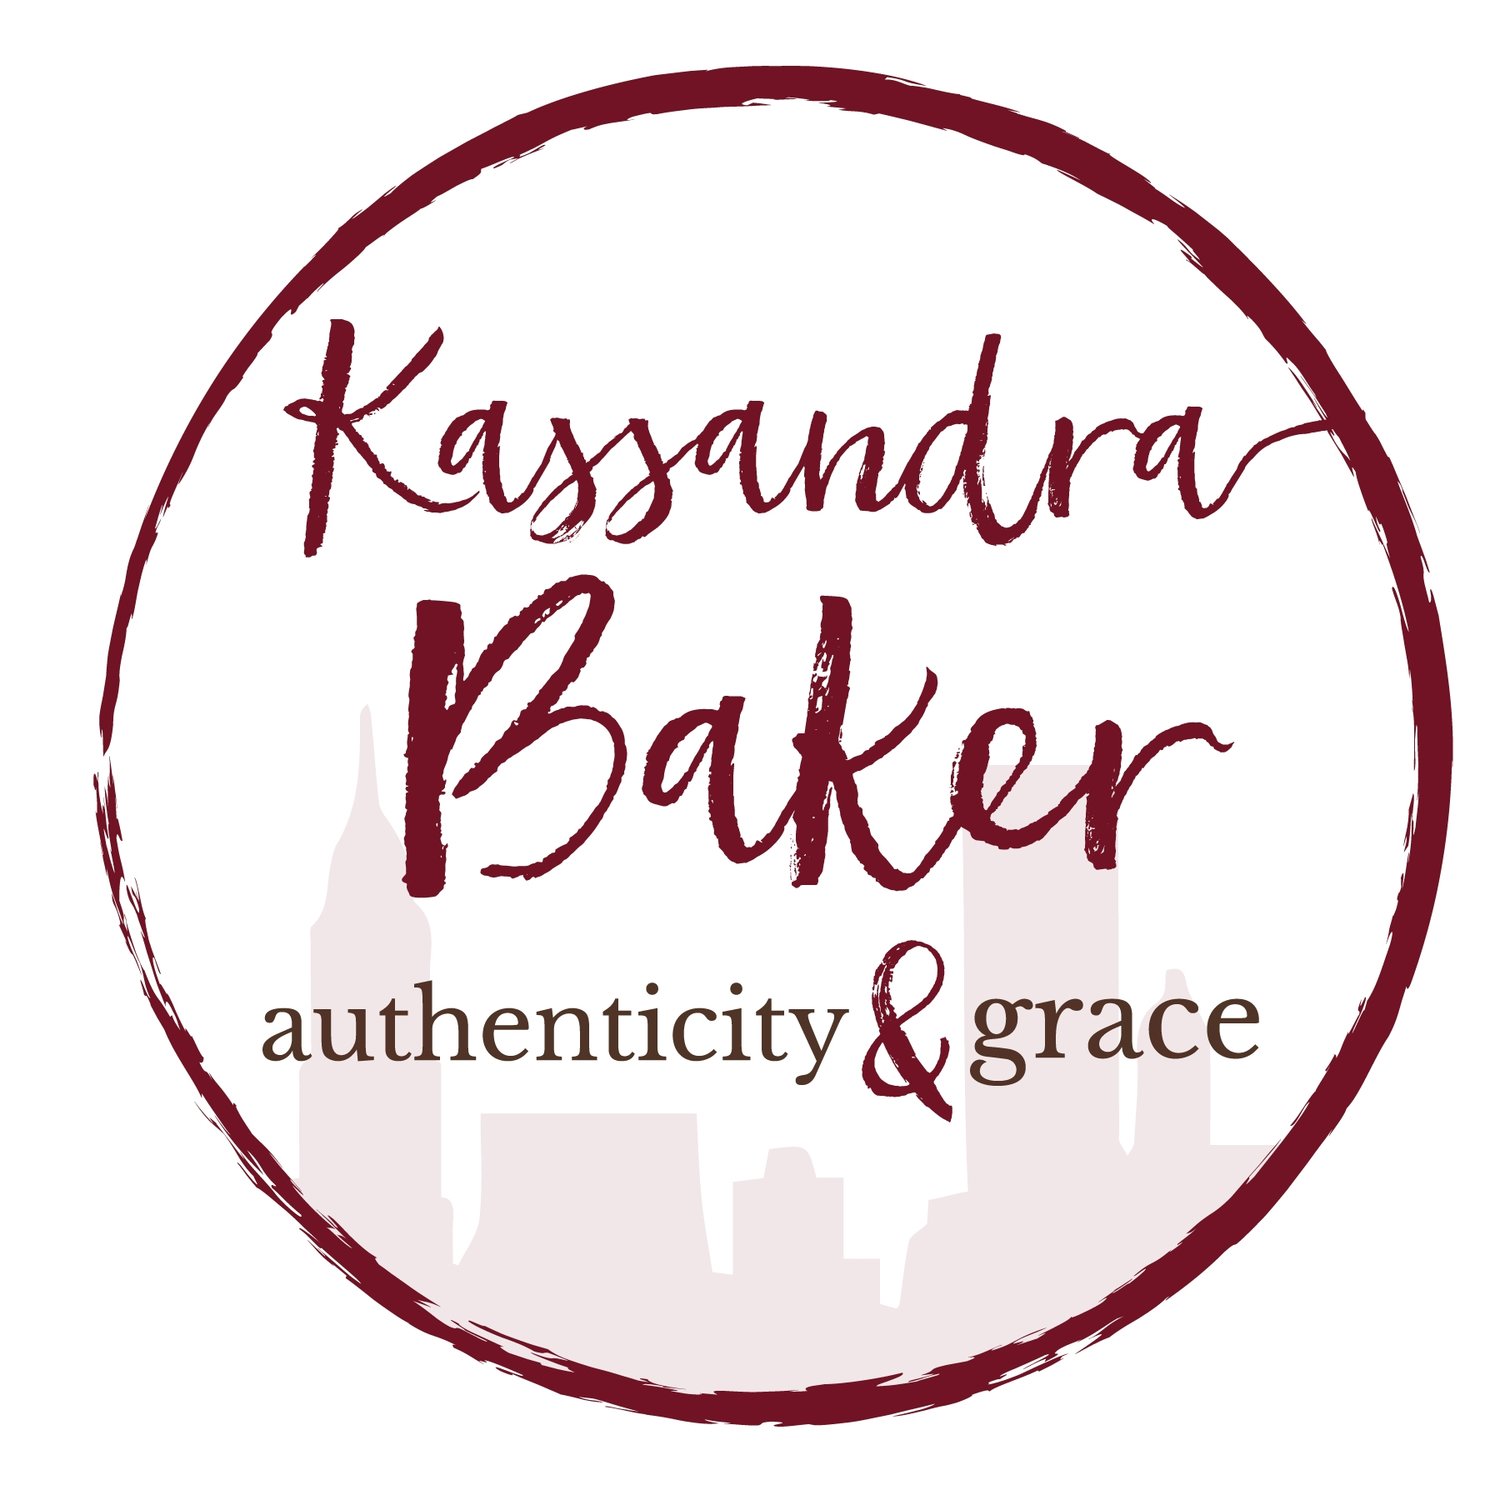 Kassandra Baker: Authenticity & Grace